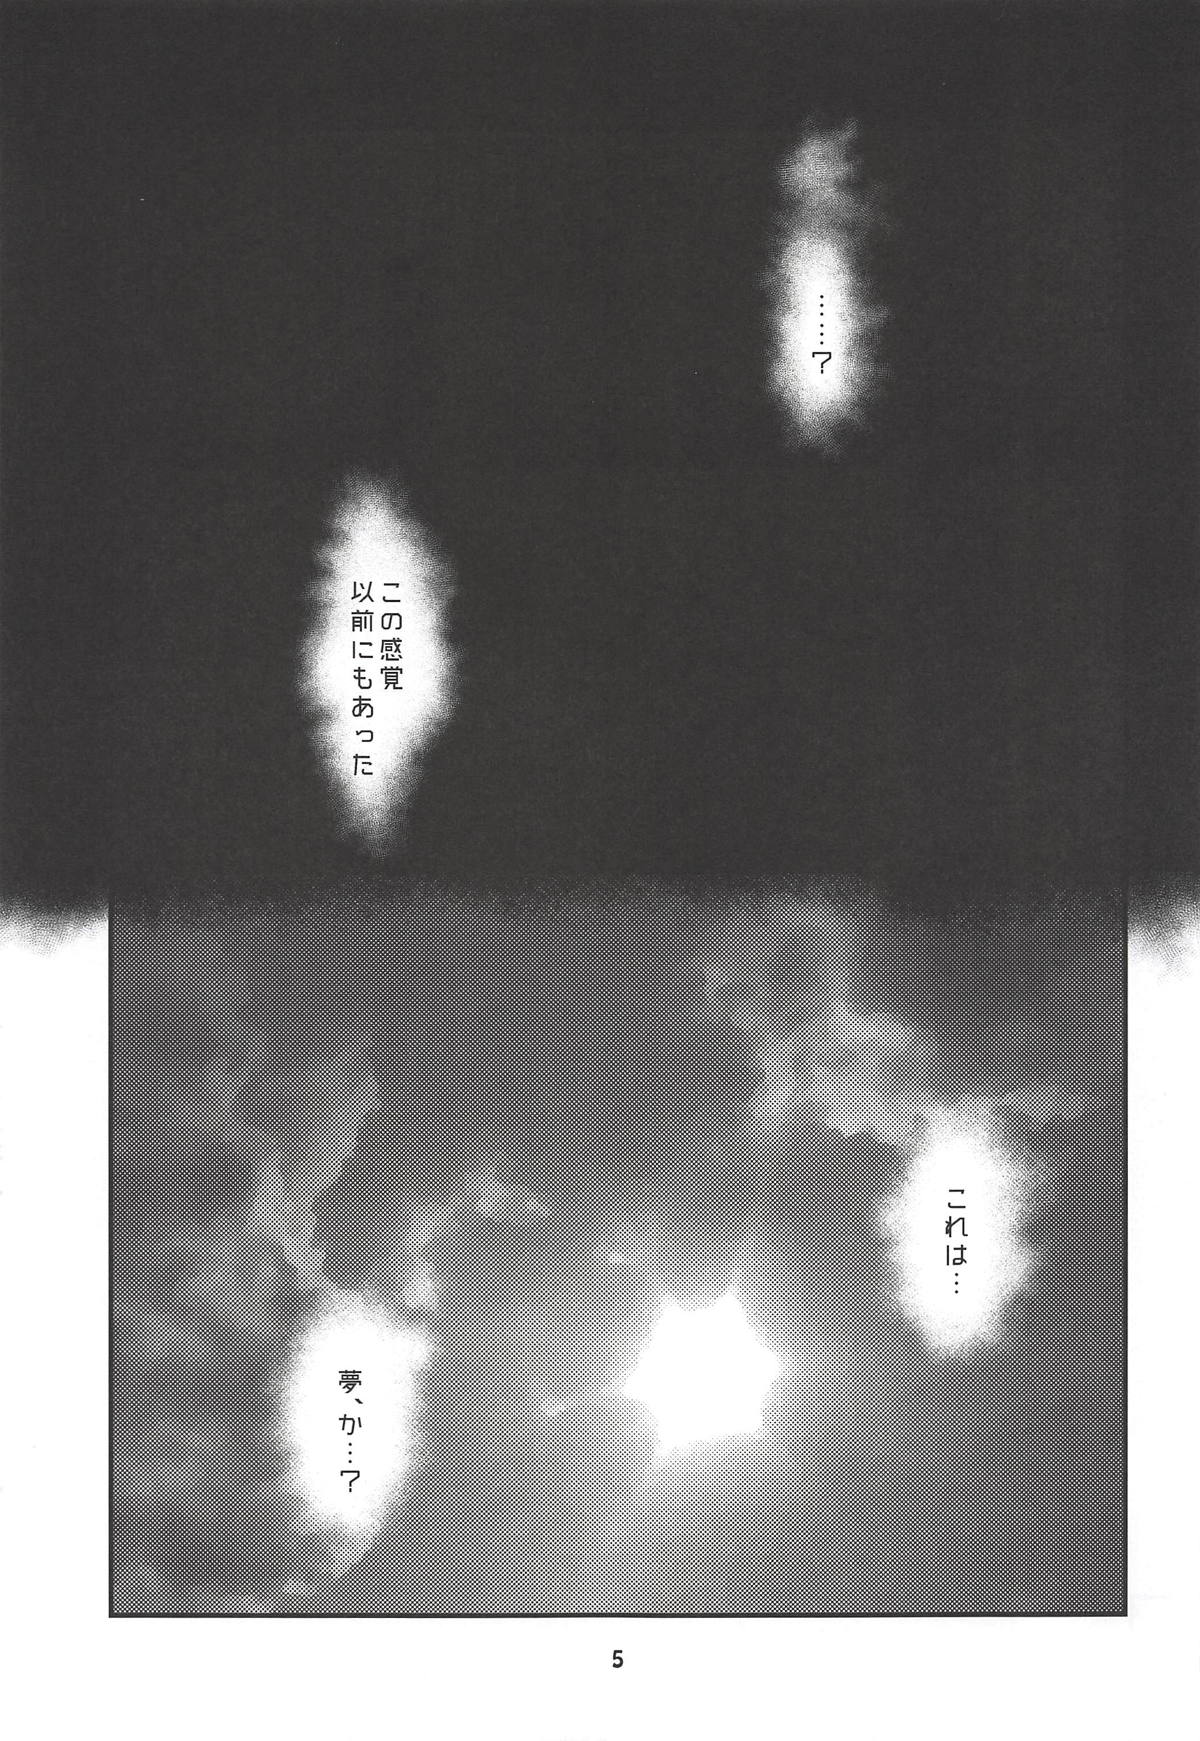 (C94) [水の庭 (碧宇)] Dreaming (Fate/Grand Order)